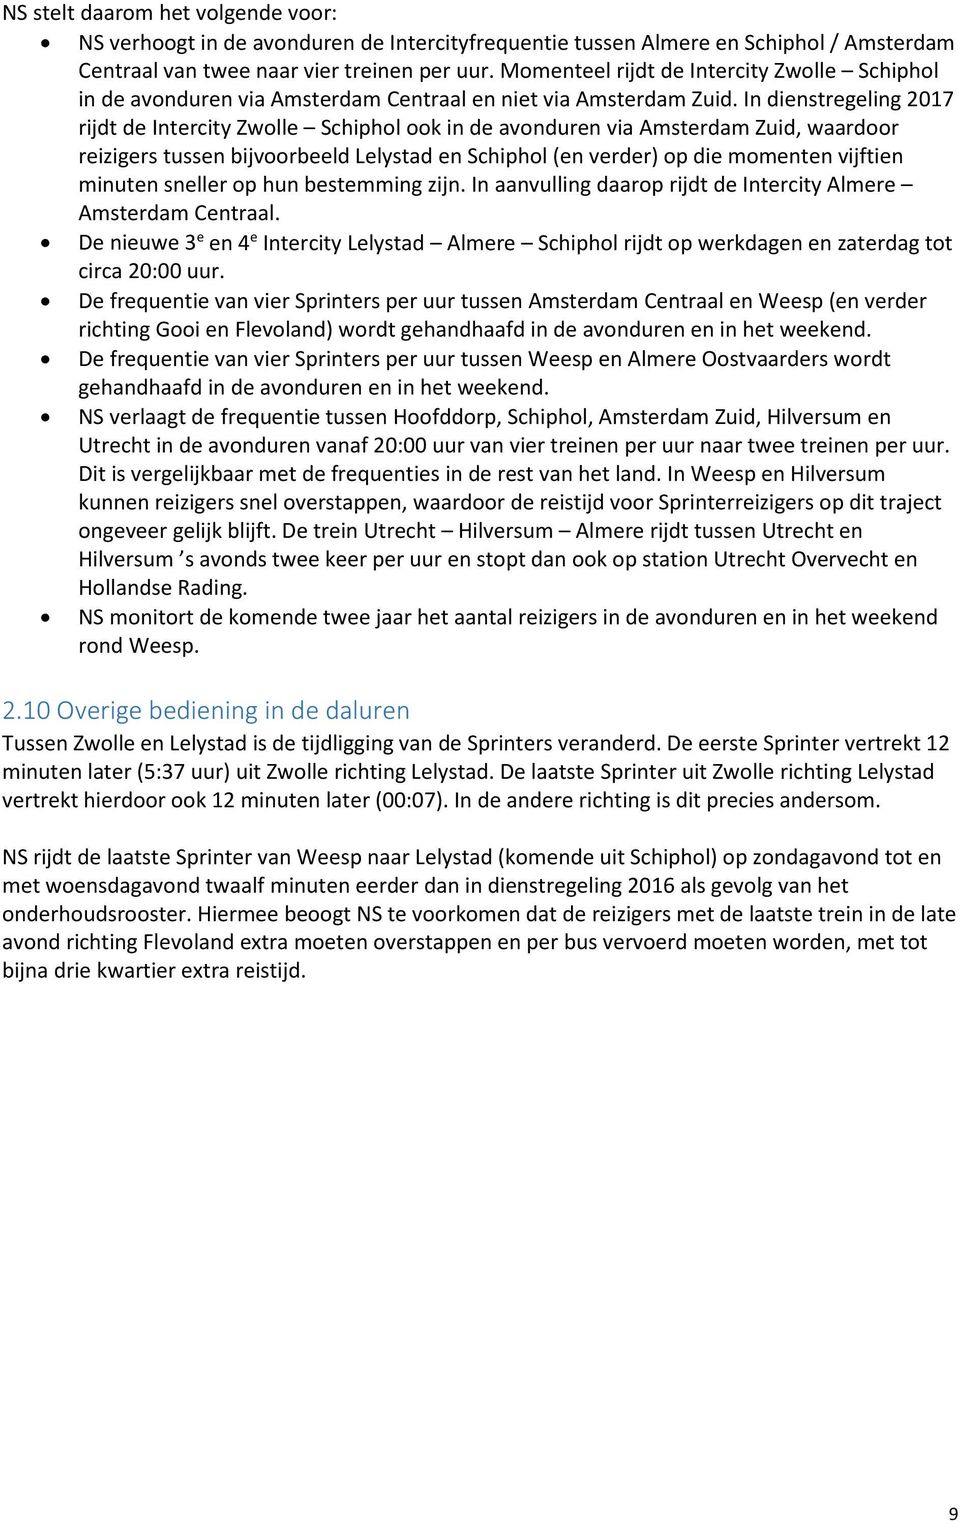 In dienstregeling 2017 rijdt de Intercity Zwolle Schiphol ook in de avonduren via Amsterdam Zuid, waardoor reizigers tussen bijvoorbeeld Lelystad en Schiphol (en verder) op die momenten vijftien